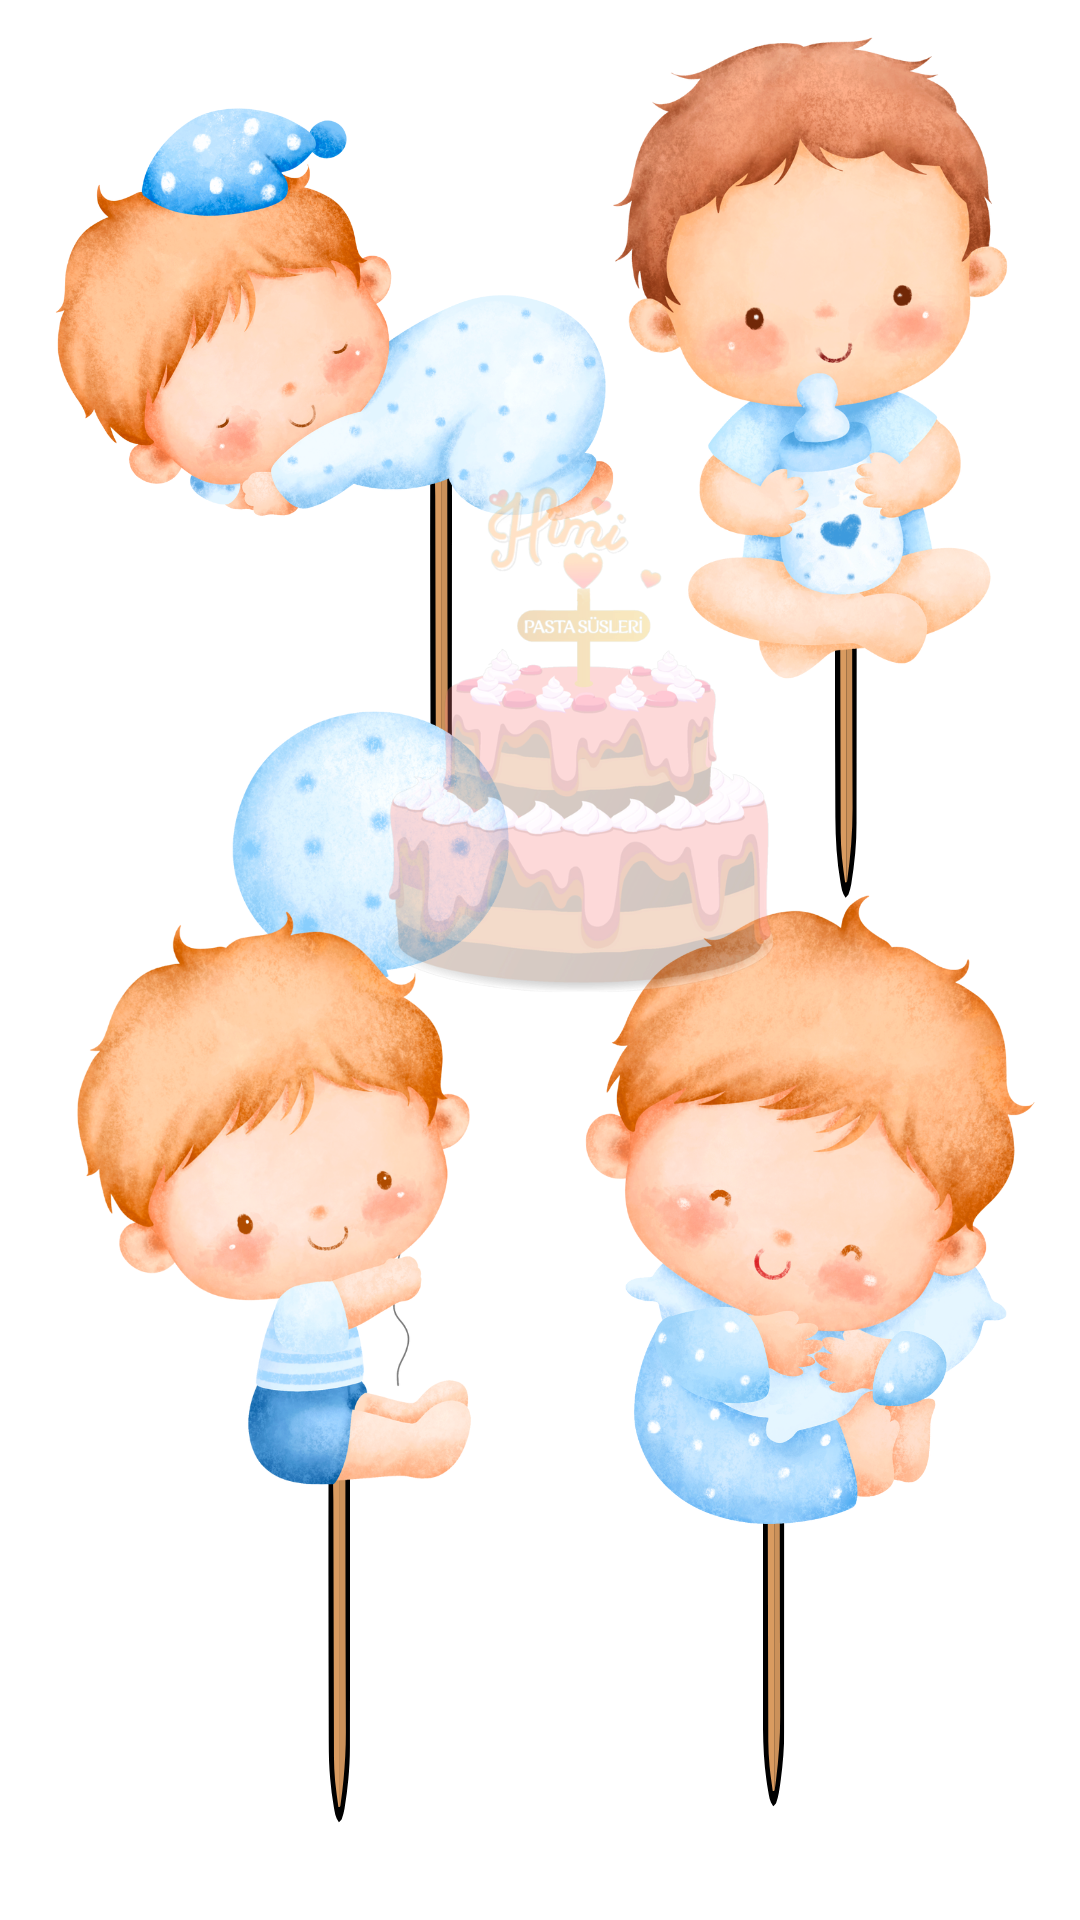 İlk Yaş Doğum Günü Pasta Süsleri Kız Erkek Çocuk Maket Pasta Kürdanı Cupcake Kürdan Süsleri M41